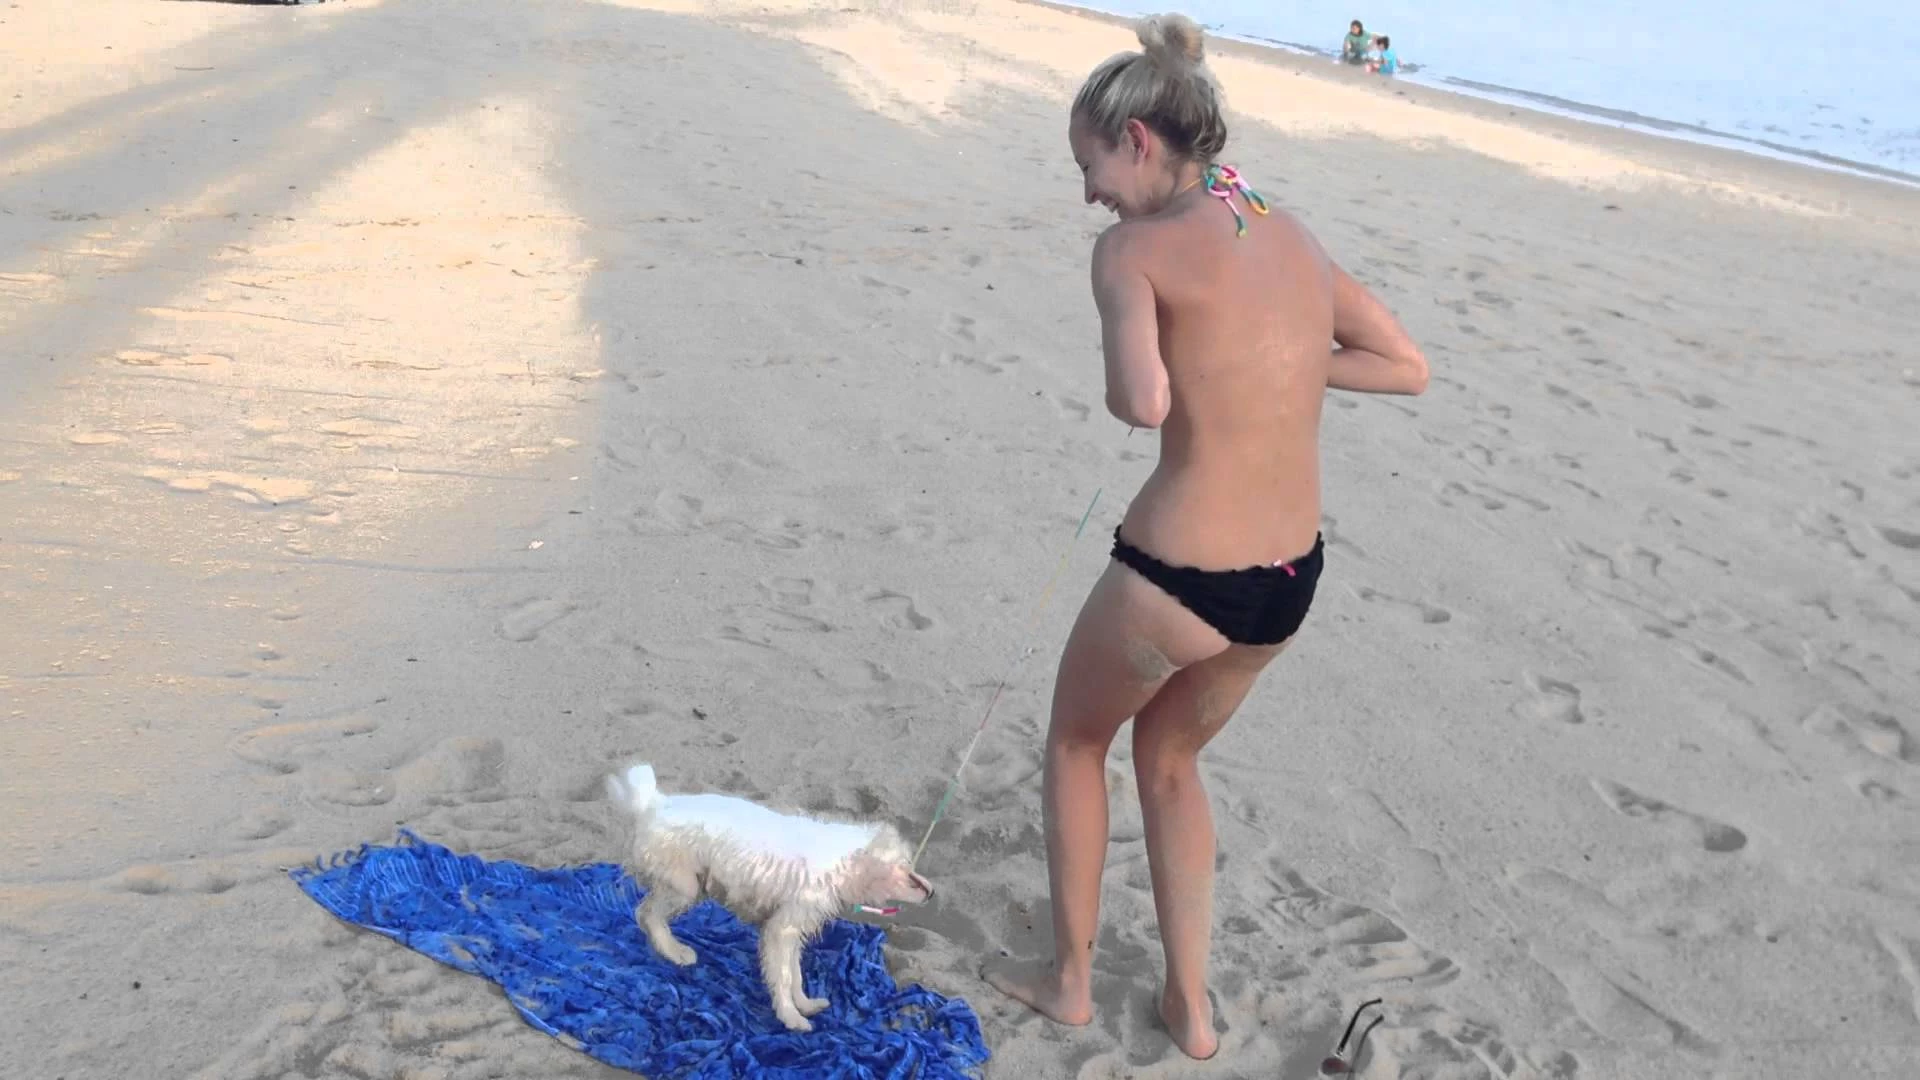 Молодая студентка на пляже без лифчика с мамой на пляже отдыхает не зная о камере неподалеку